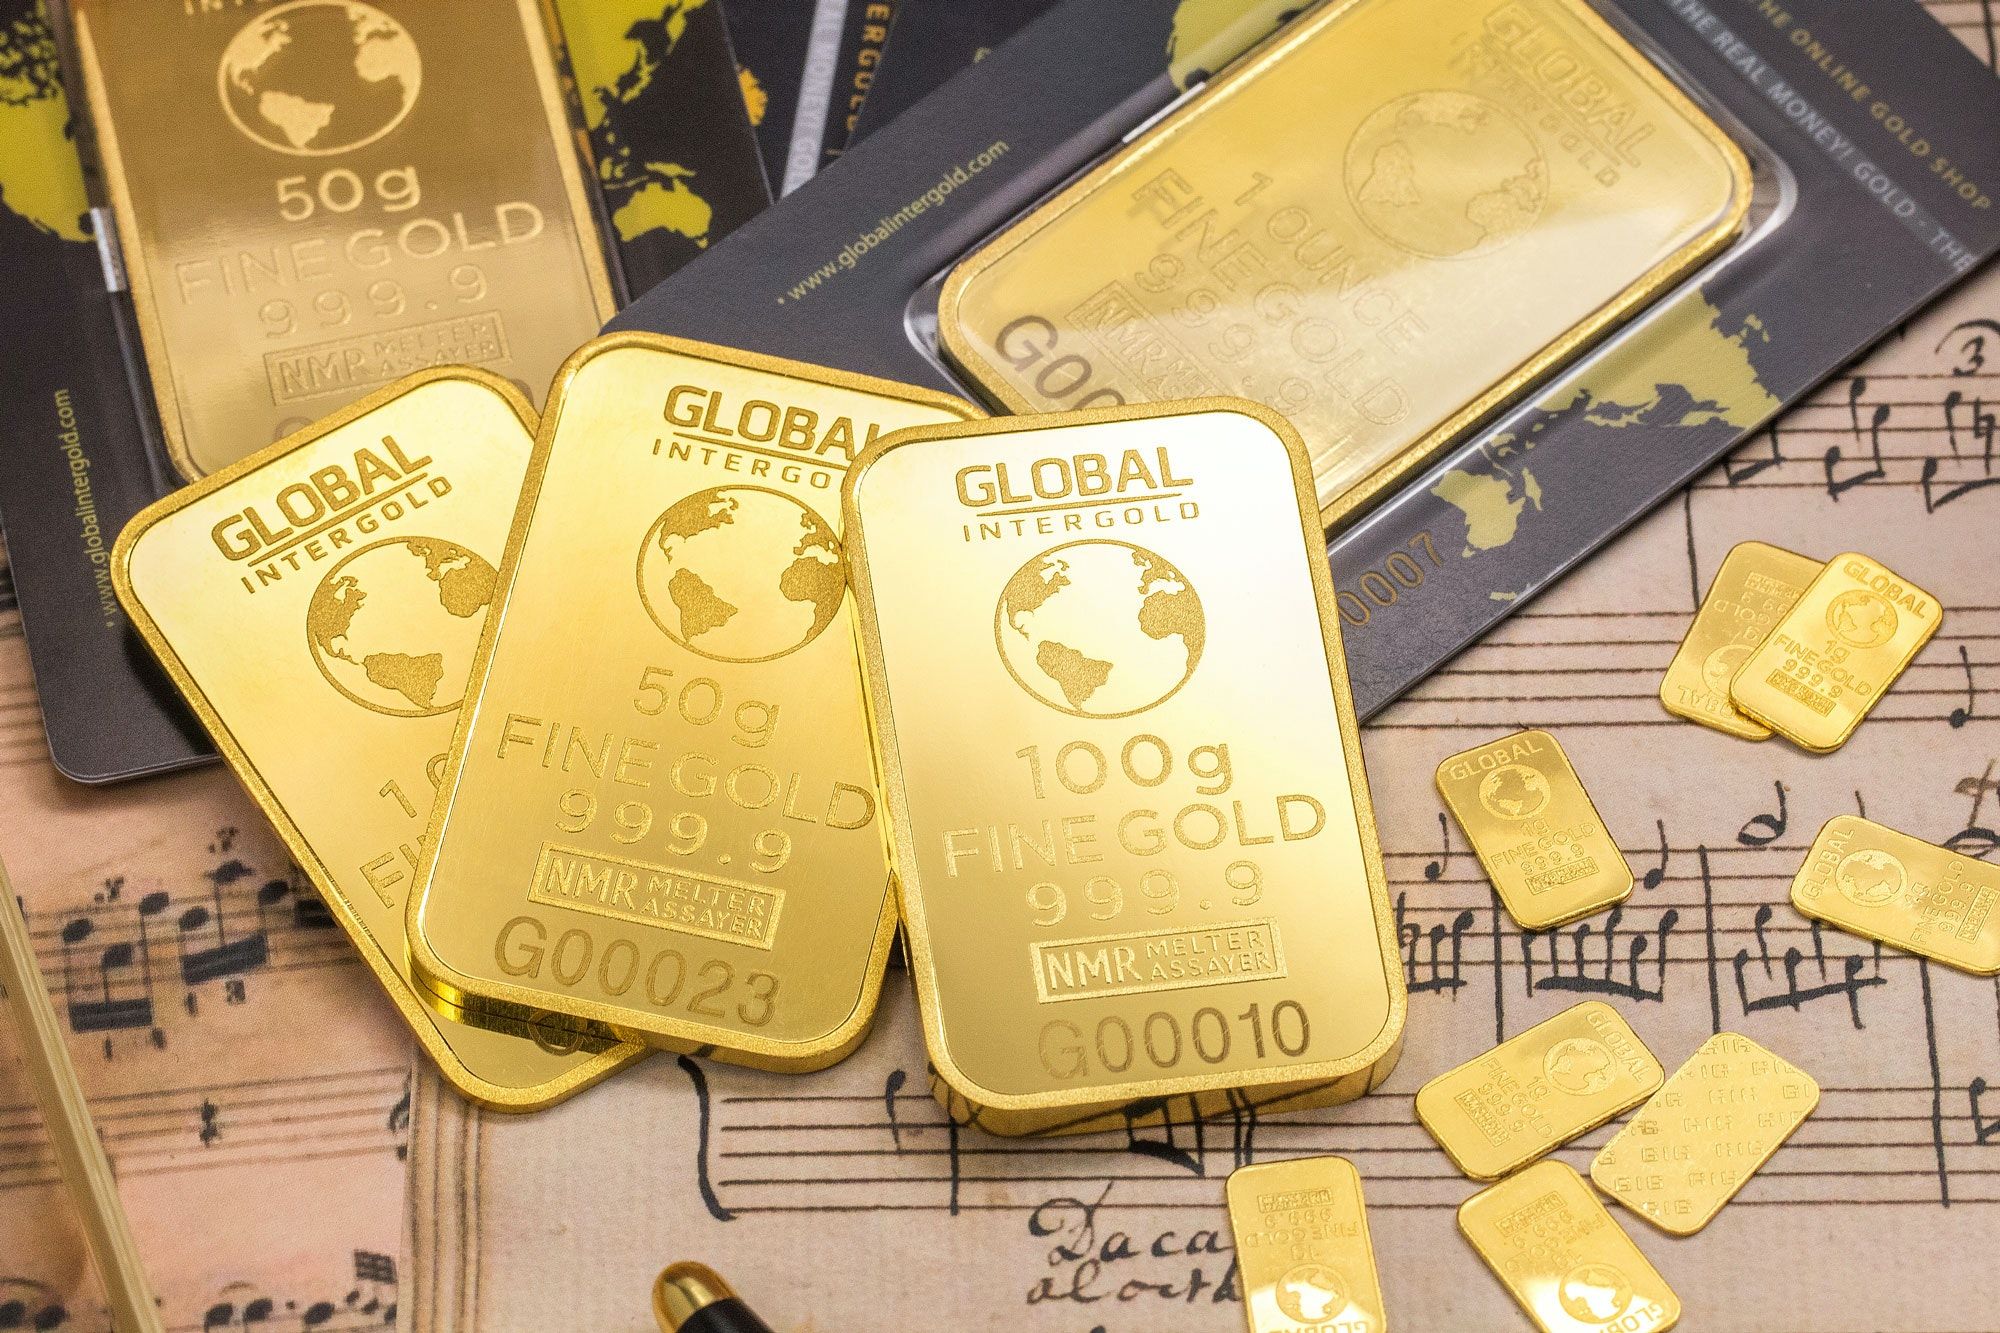 Harga emas di Pegadaian pada Minggu, 28 Agustus 2022, Antam dan UBS kompak turun